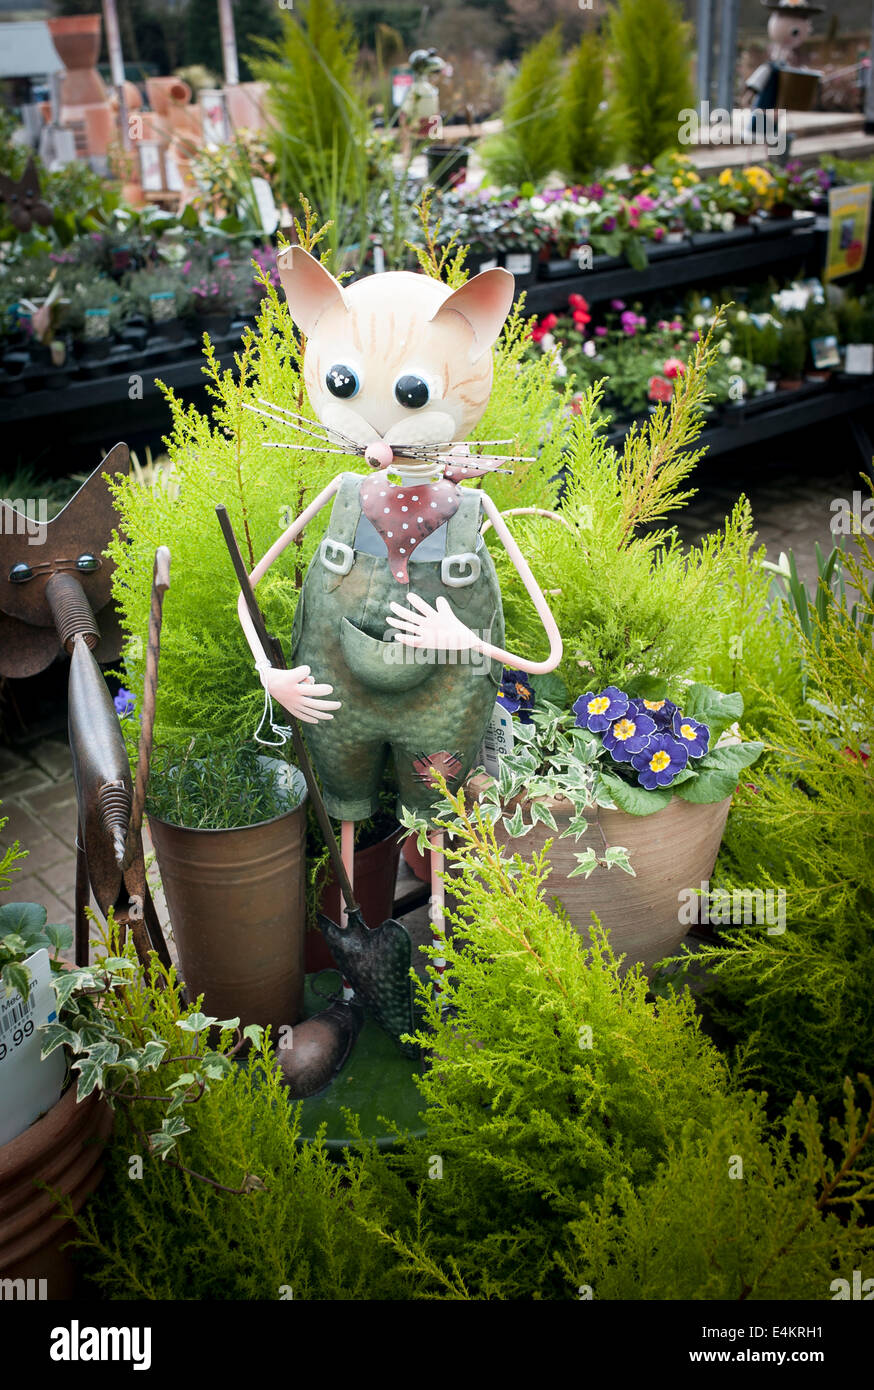 Figurine de jardin amusante à vendre dans un centre de jardin anglais. Demandeur d'attention Banque D'Images